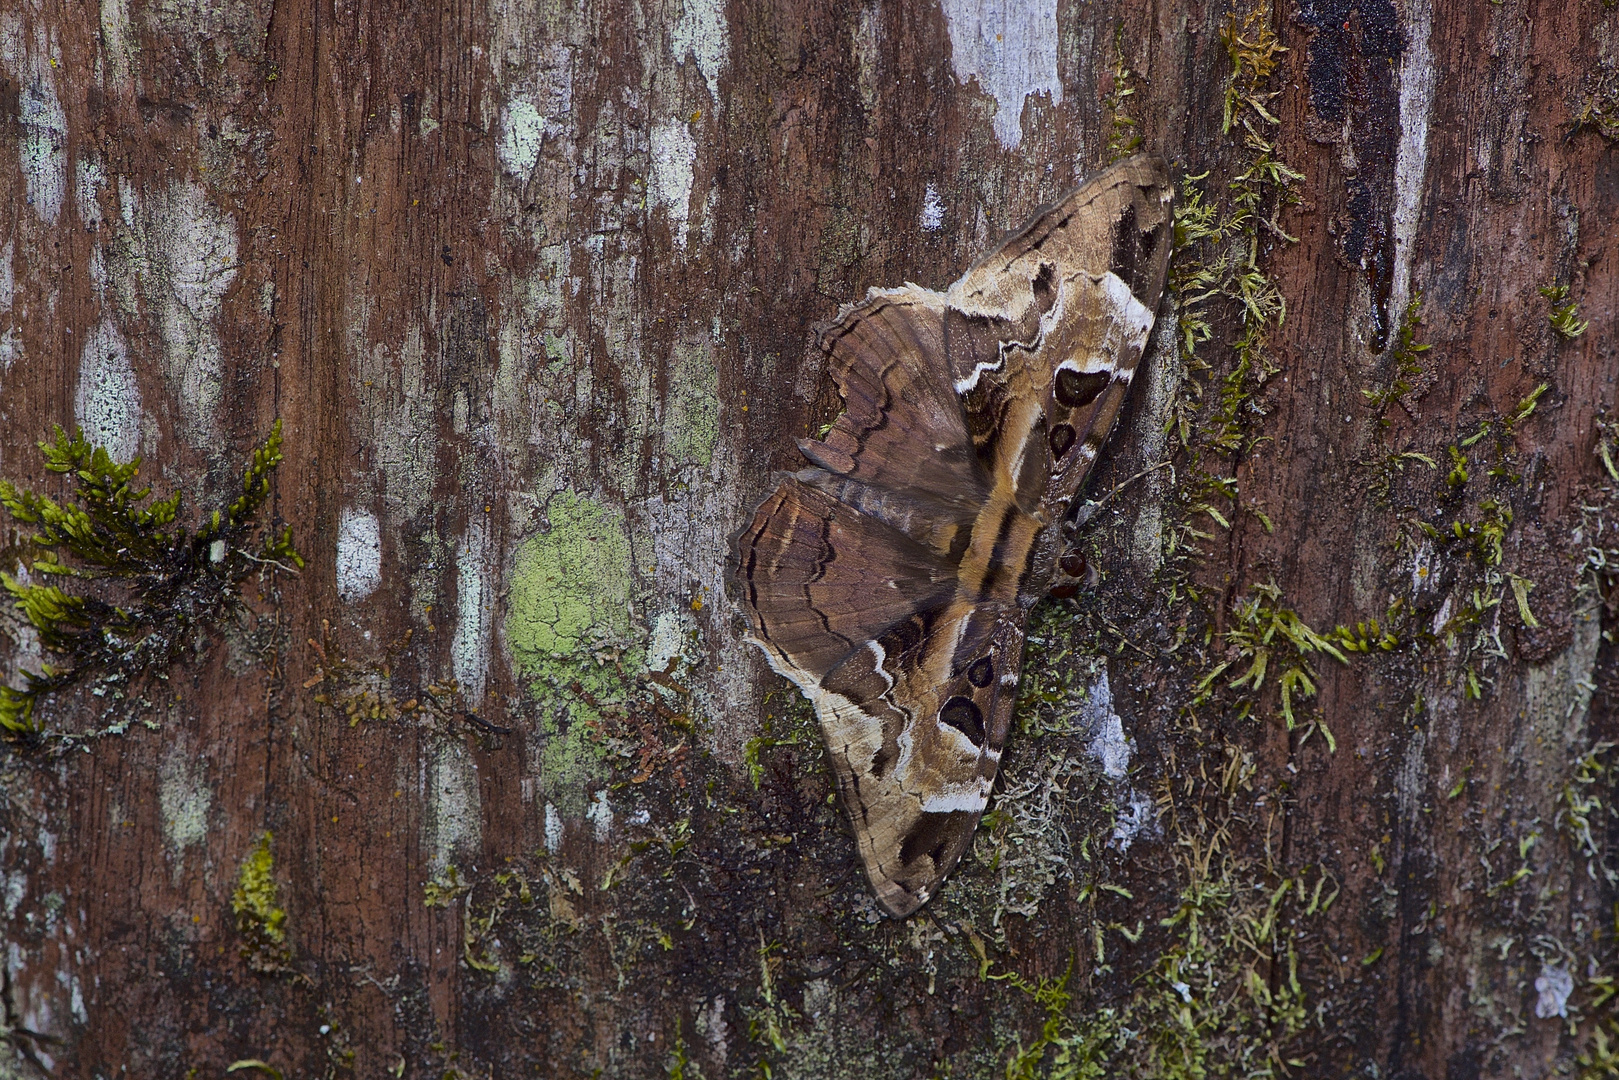 Faszination Regenwald! Nachtfalter sp. mit Tarnungspracht aus dem Bergregenwald von Peru